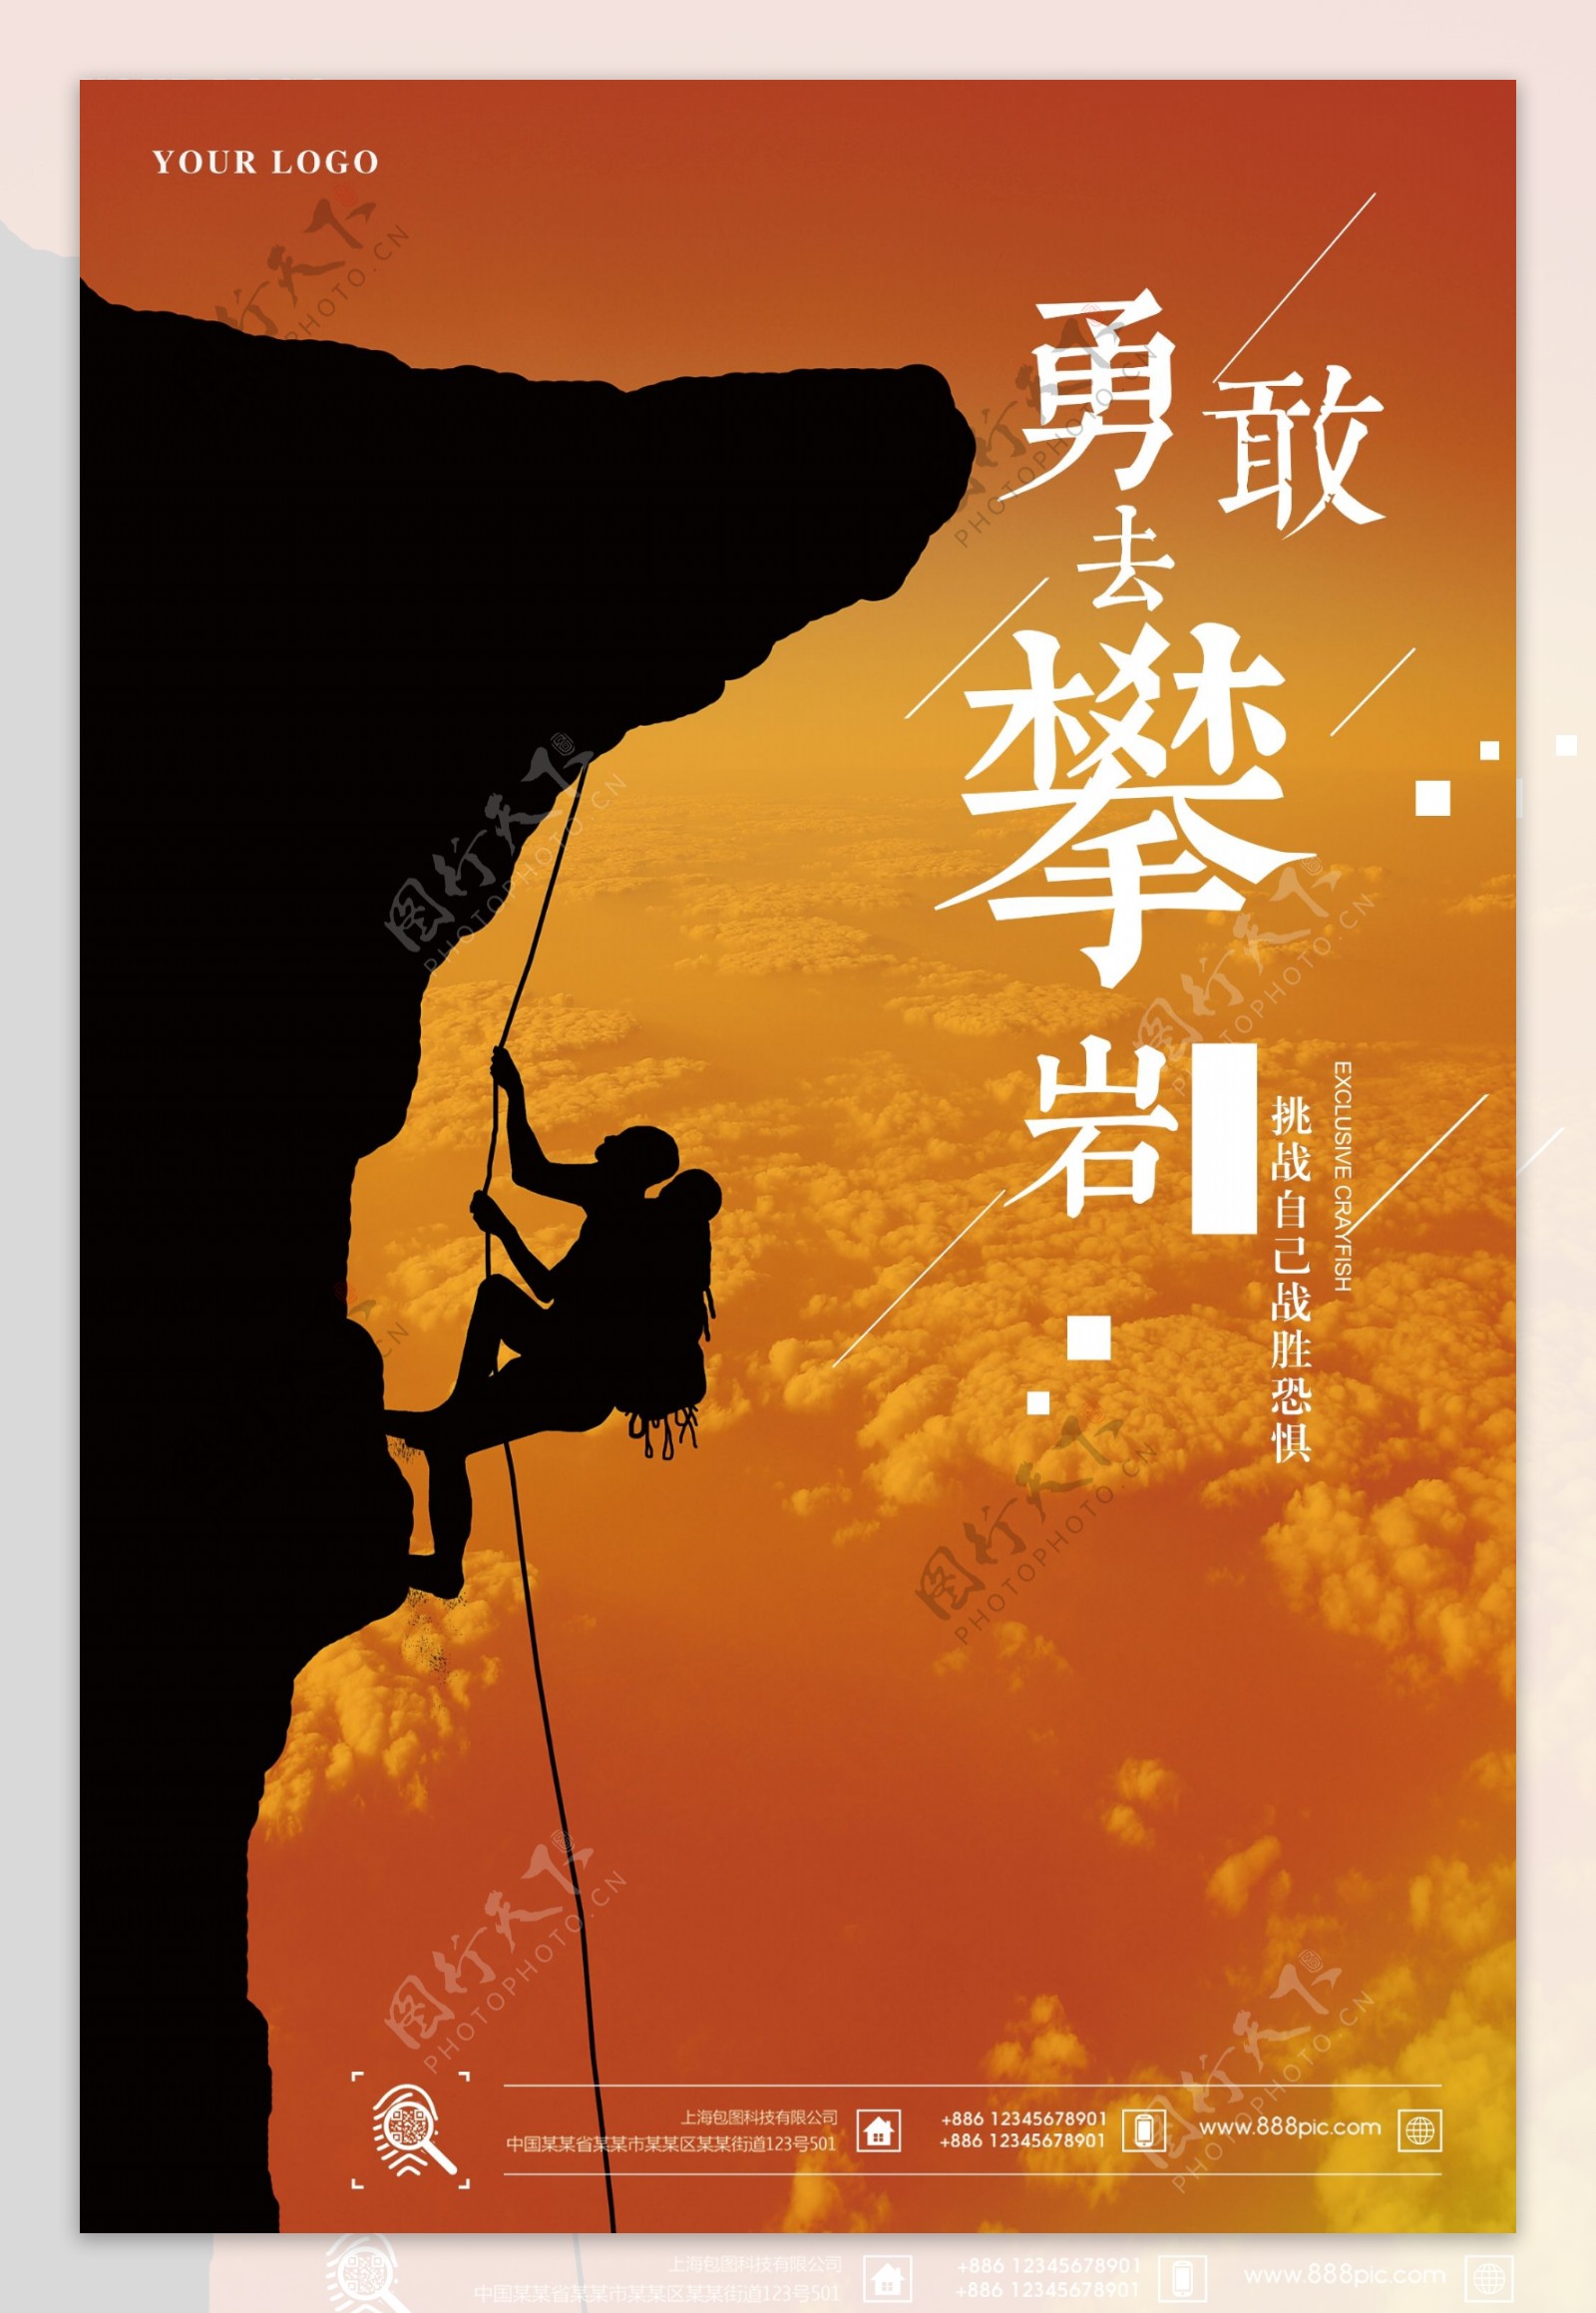 大气简易户外运动攀岩宣传海报设计